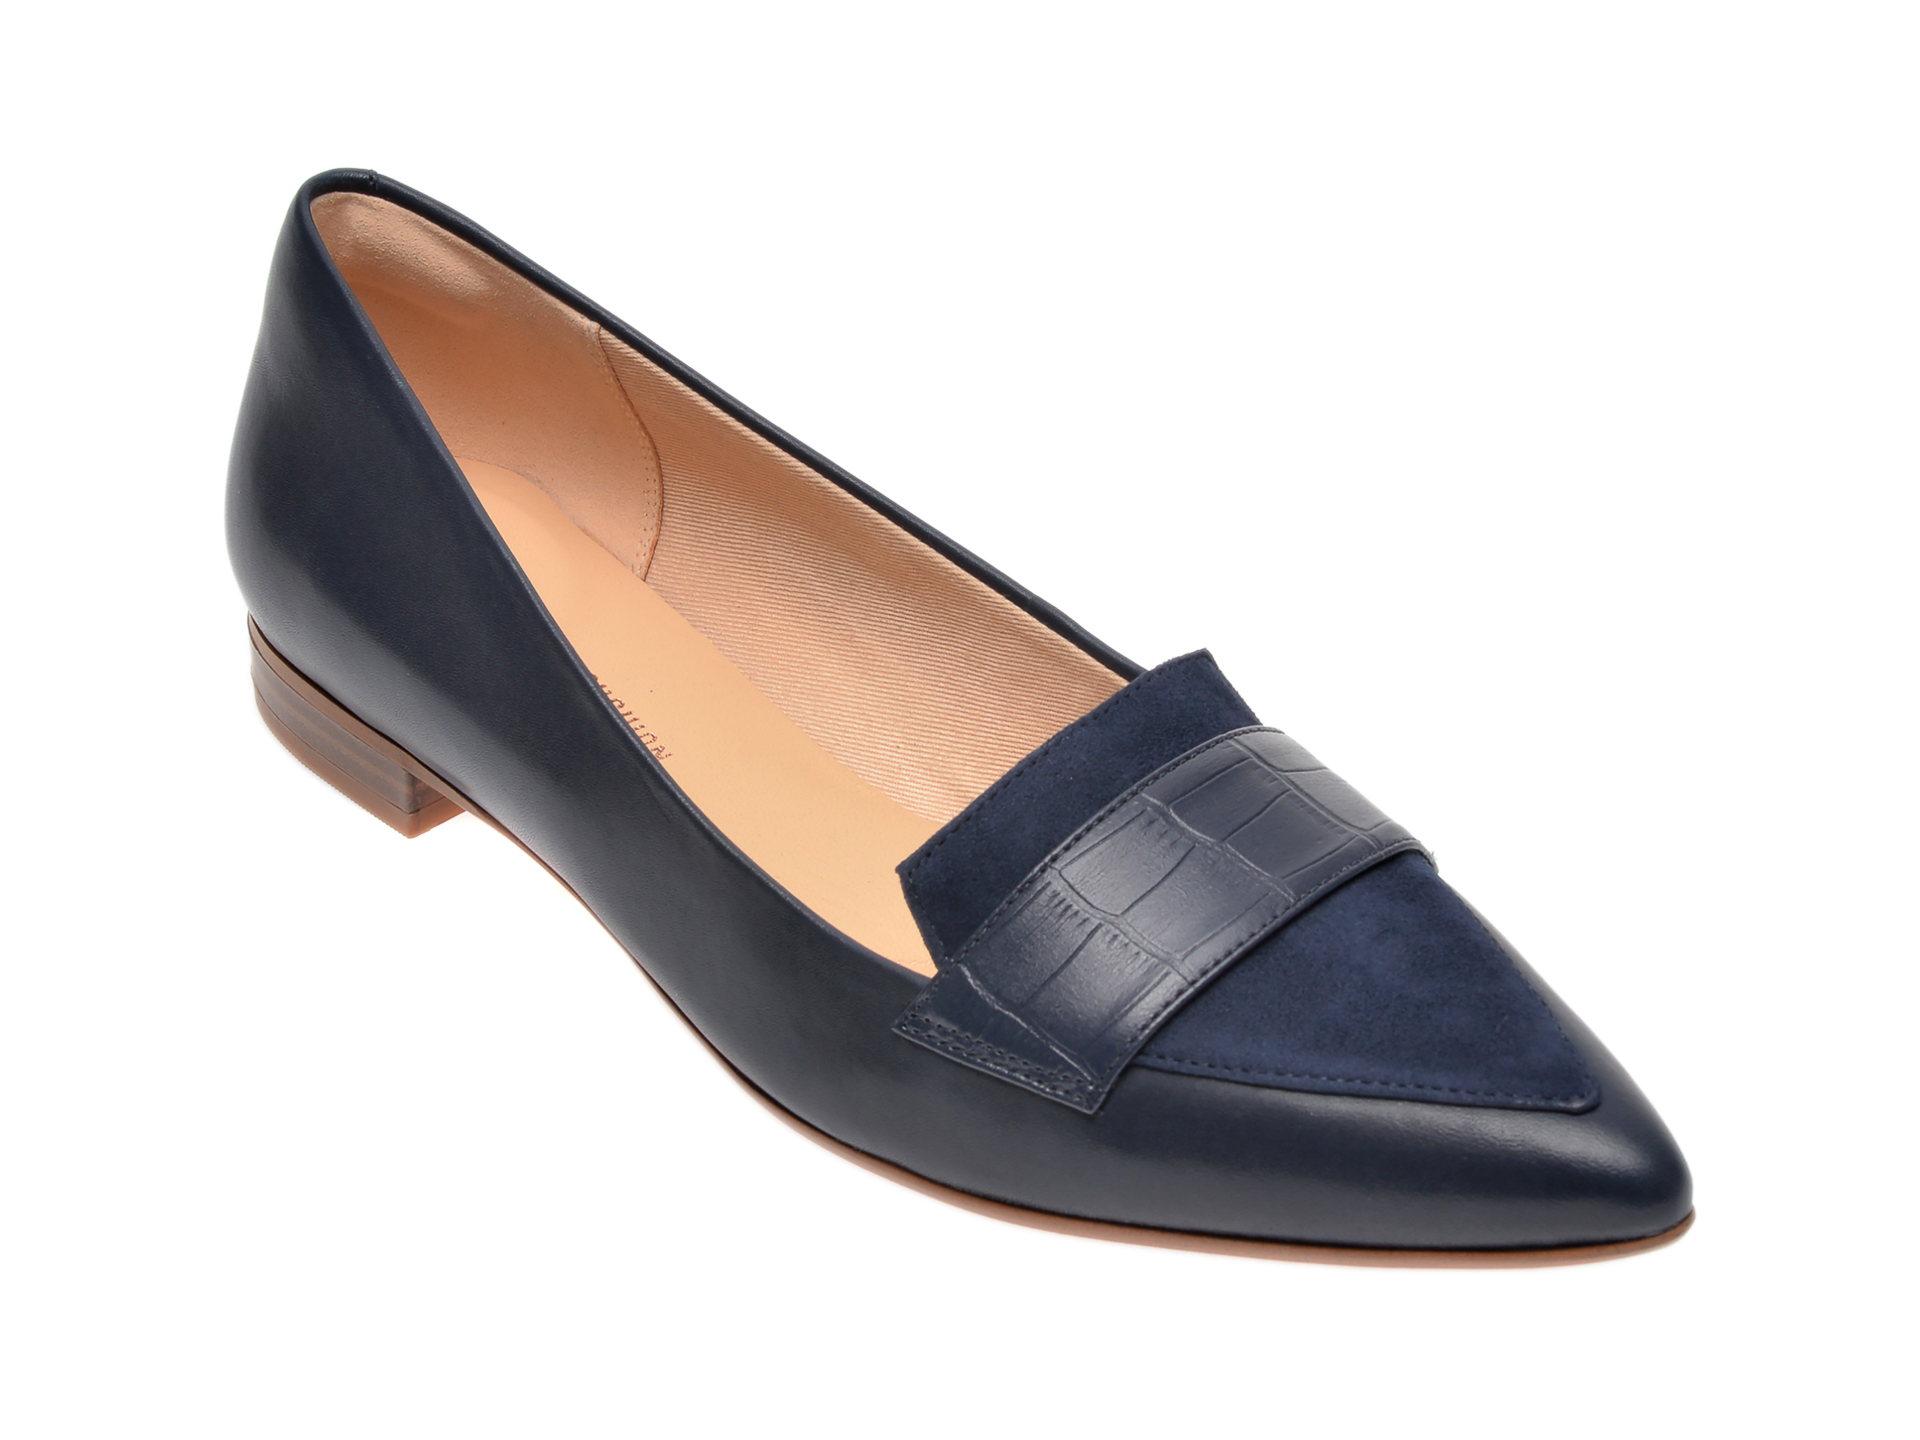 Pantofi CLARKS bleumarin, Laina15 Loafer, din piele naturala